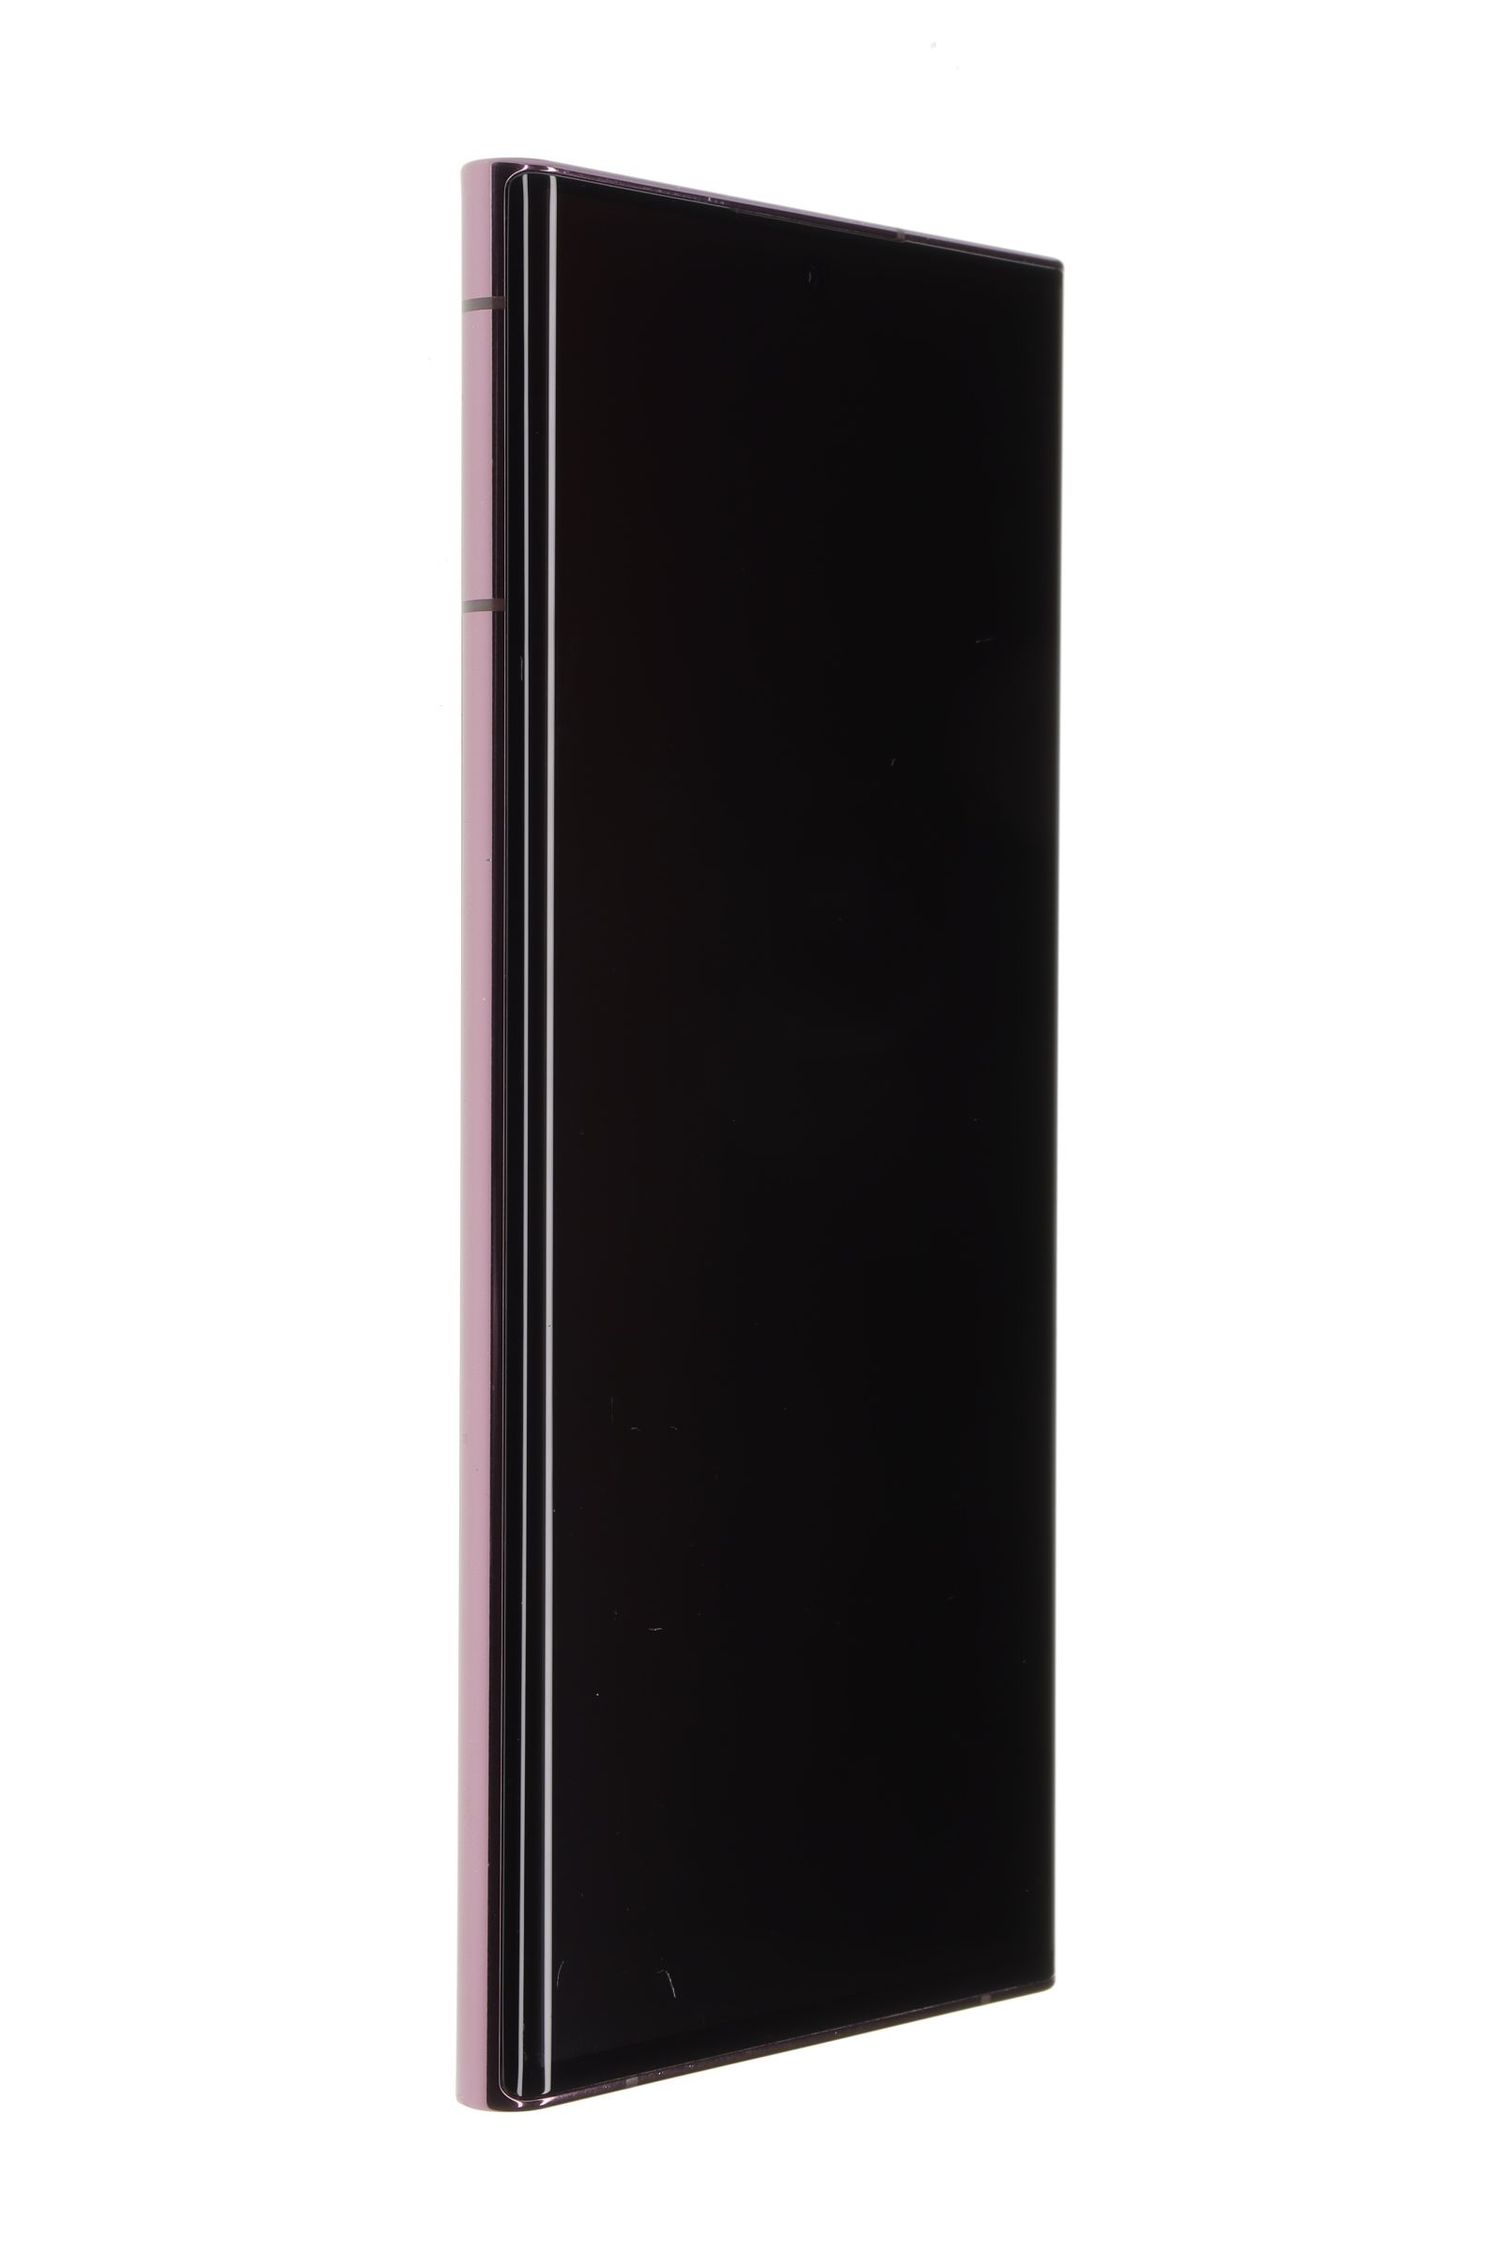 Telefon mobil Samsung Galaxy S22 Ultra 5G Dual Sim, Burgundy, 256 GB, Foarte Bun